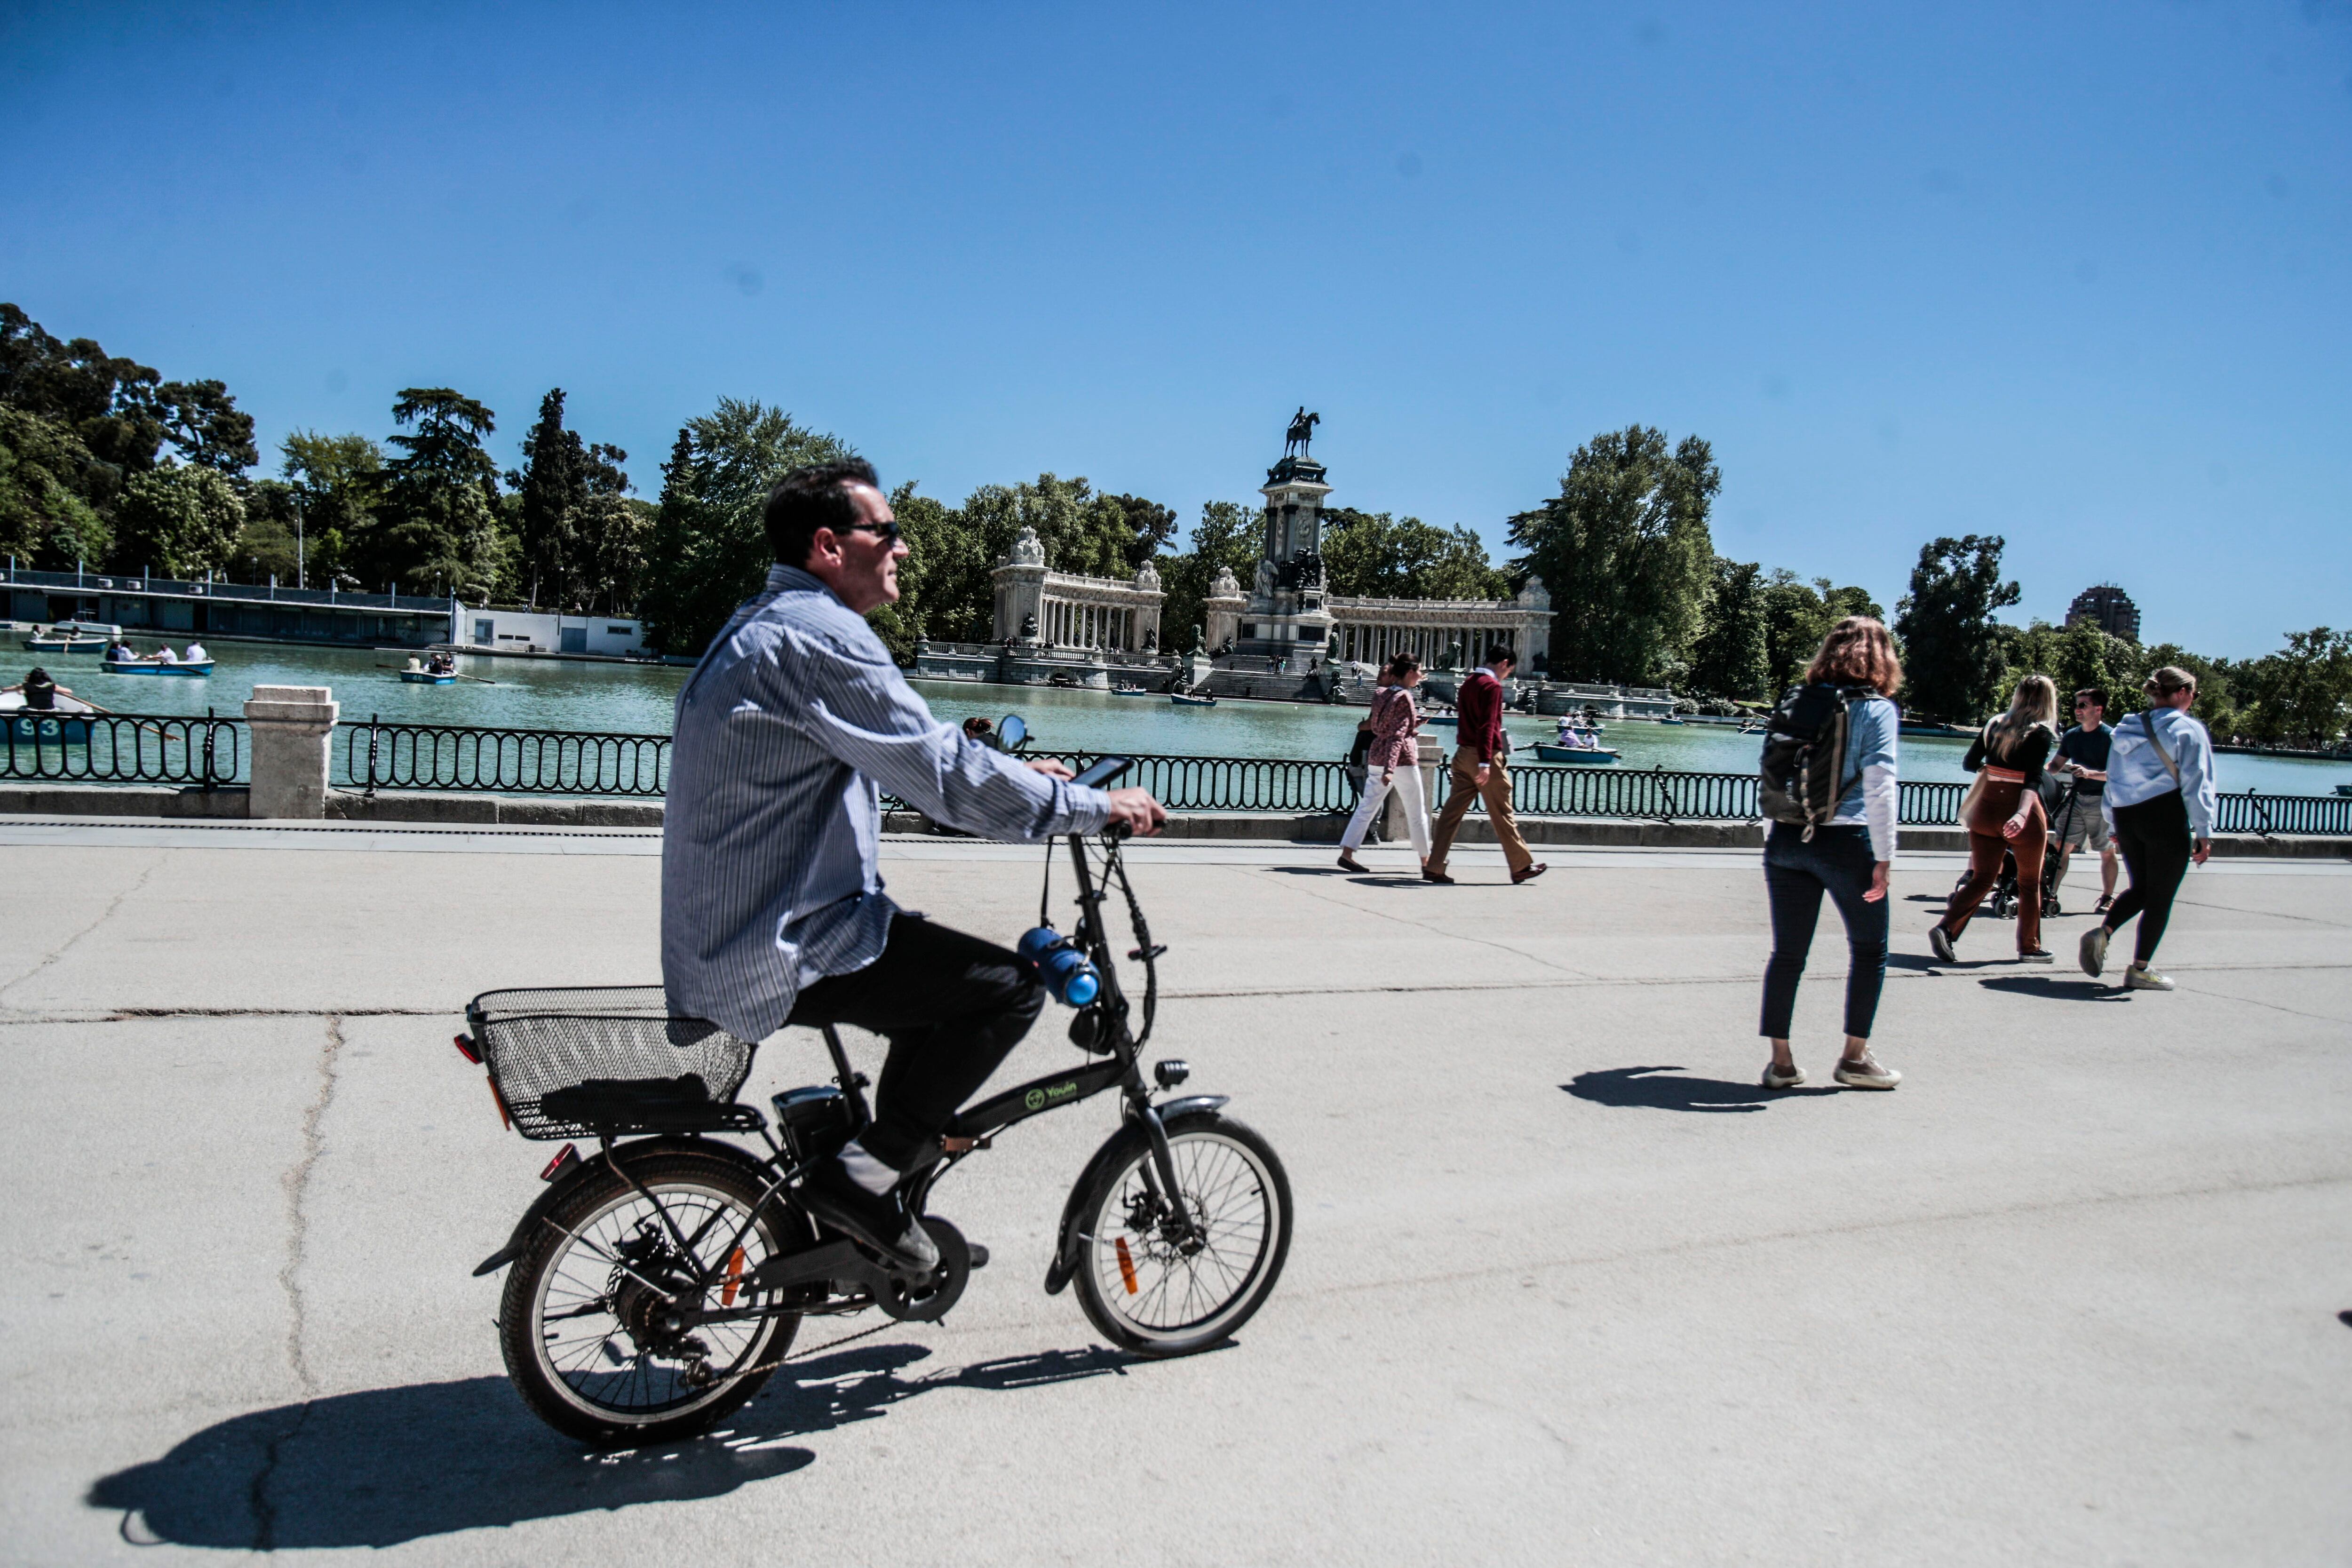 Una persona pasea en bici, este lunes en el parque del Retiro de Madrid.